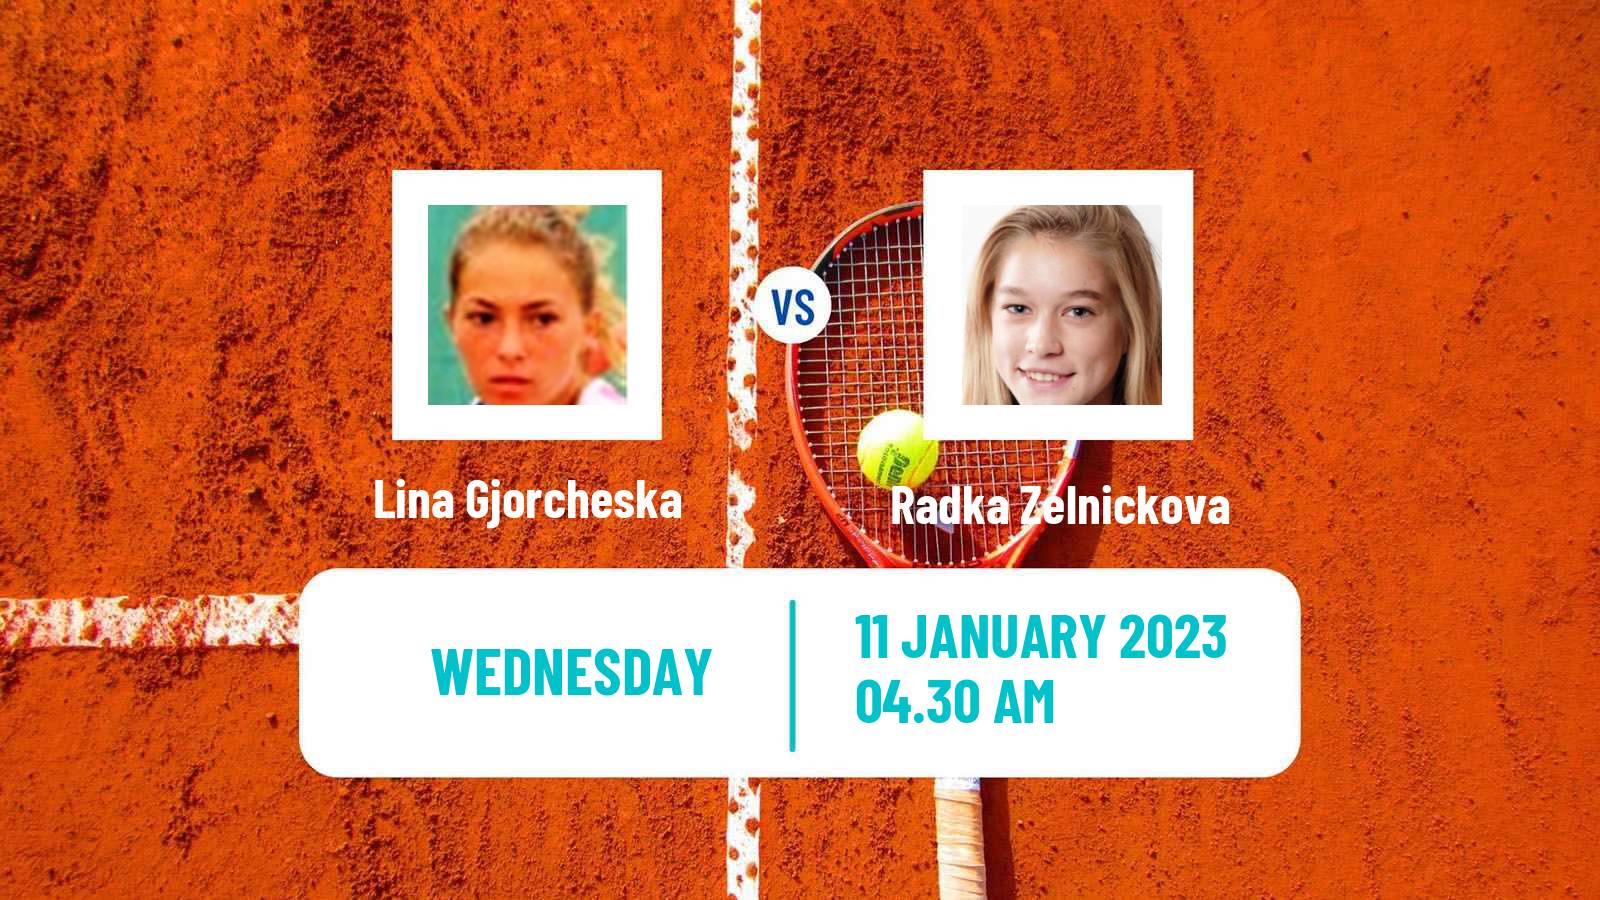 Tennis ITF Tournaments Lina Gjorcheska - Radka Zelnickova